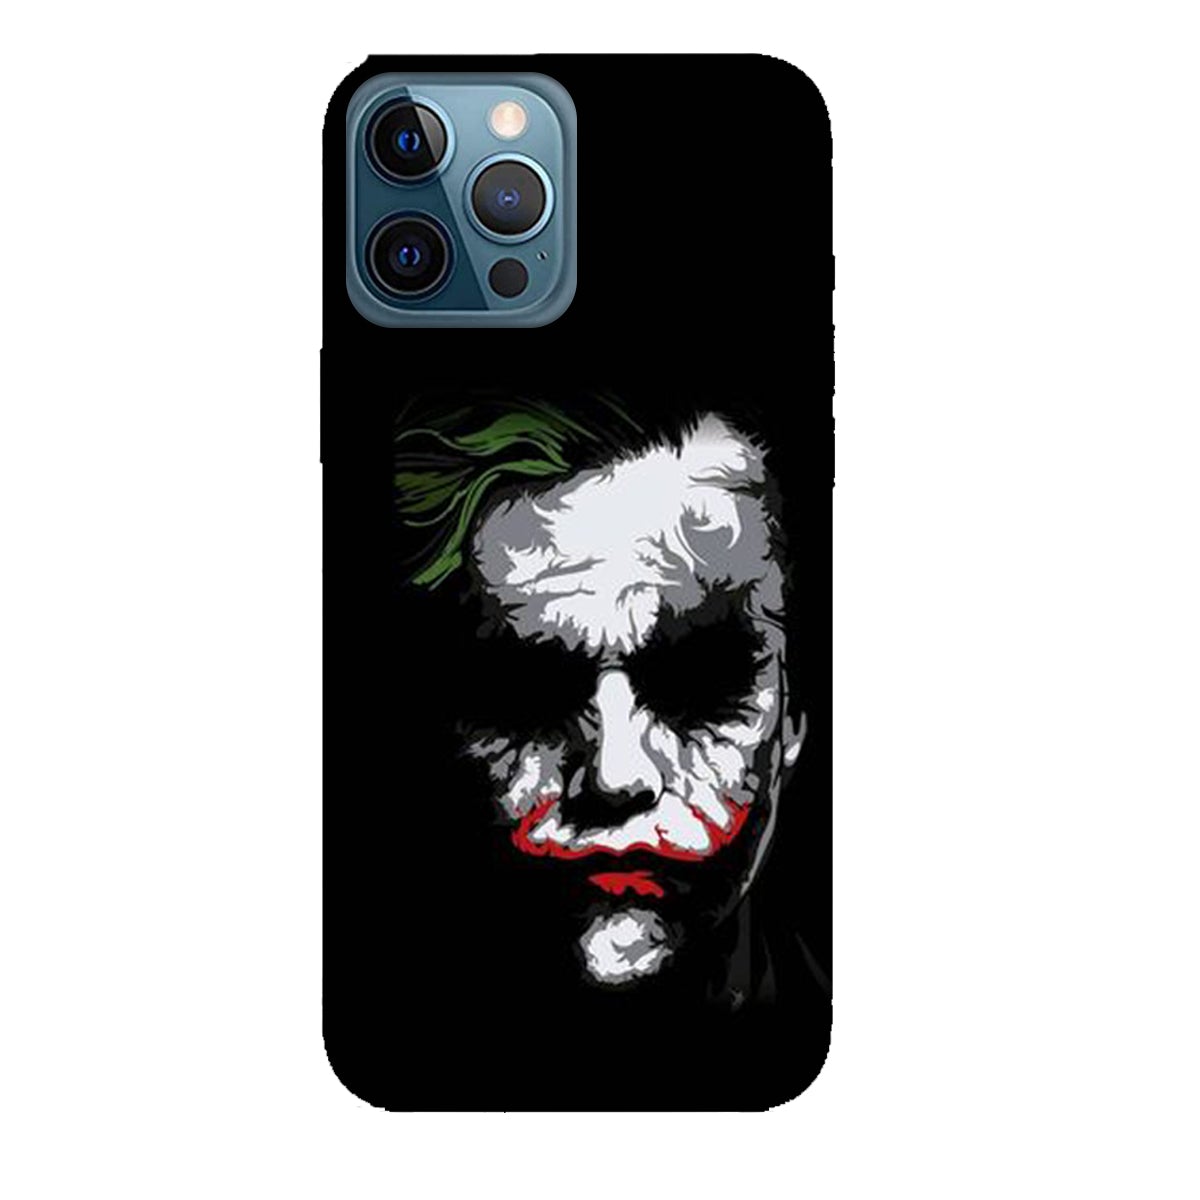 Joker Face - Black - Mobile Phone Cover - Hard Case